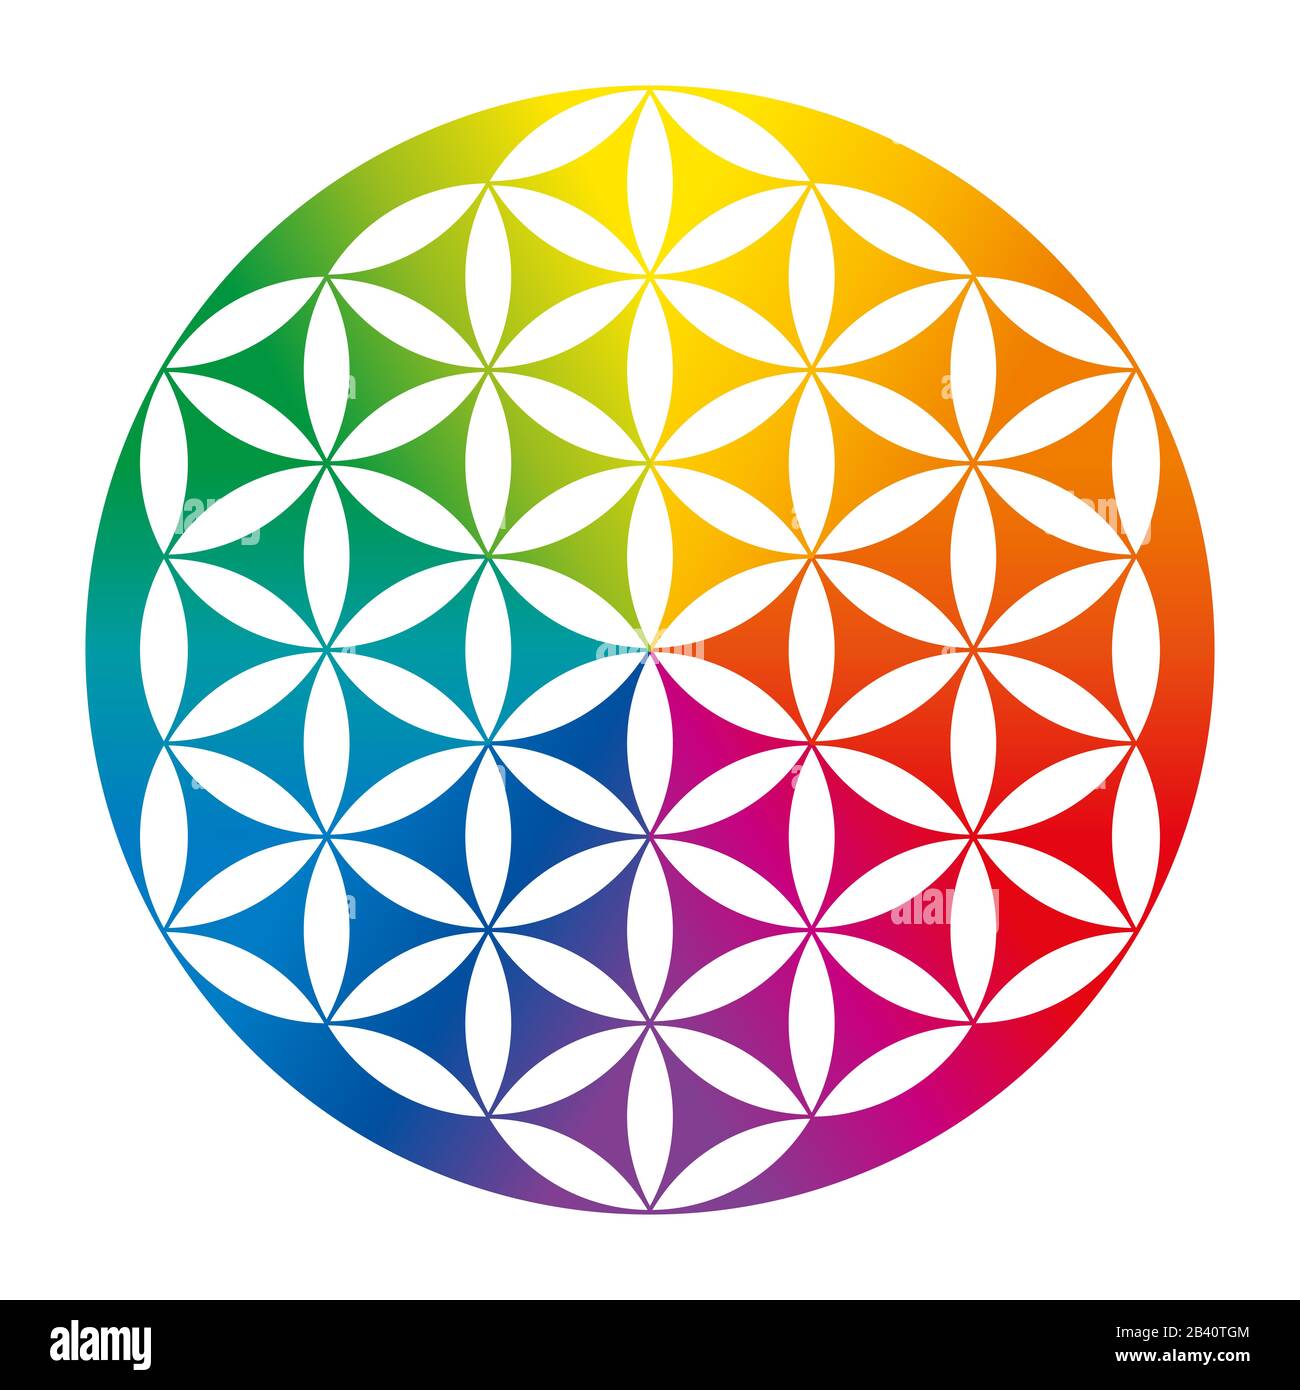 Fiori di vita invertiti di colore arcobaleno. Figura geometrica, simbolo spirituale e geometria Sacra. Cerchi sovrapposti che formano un motivo simile a un fiore. Foto Stock